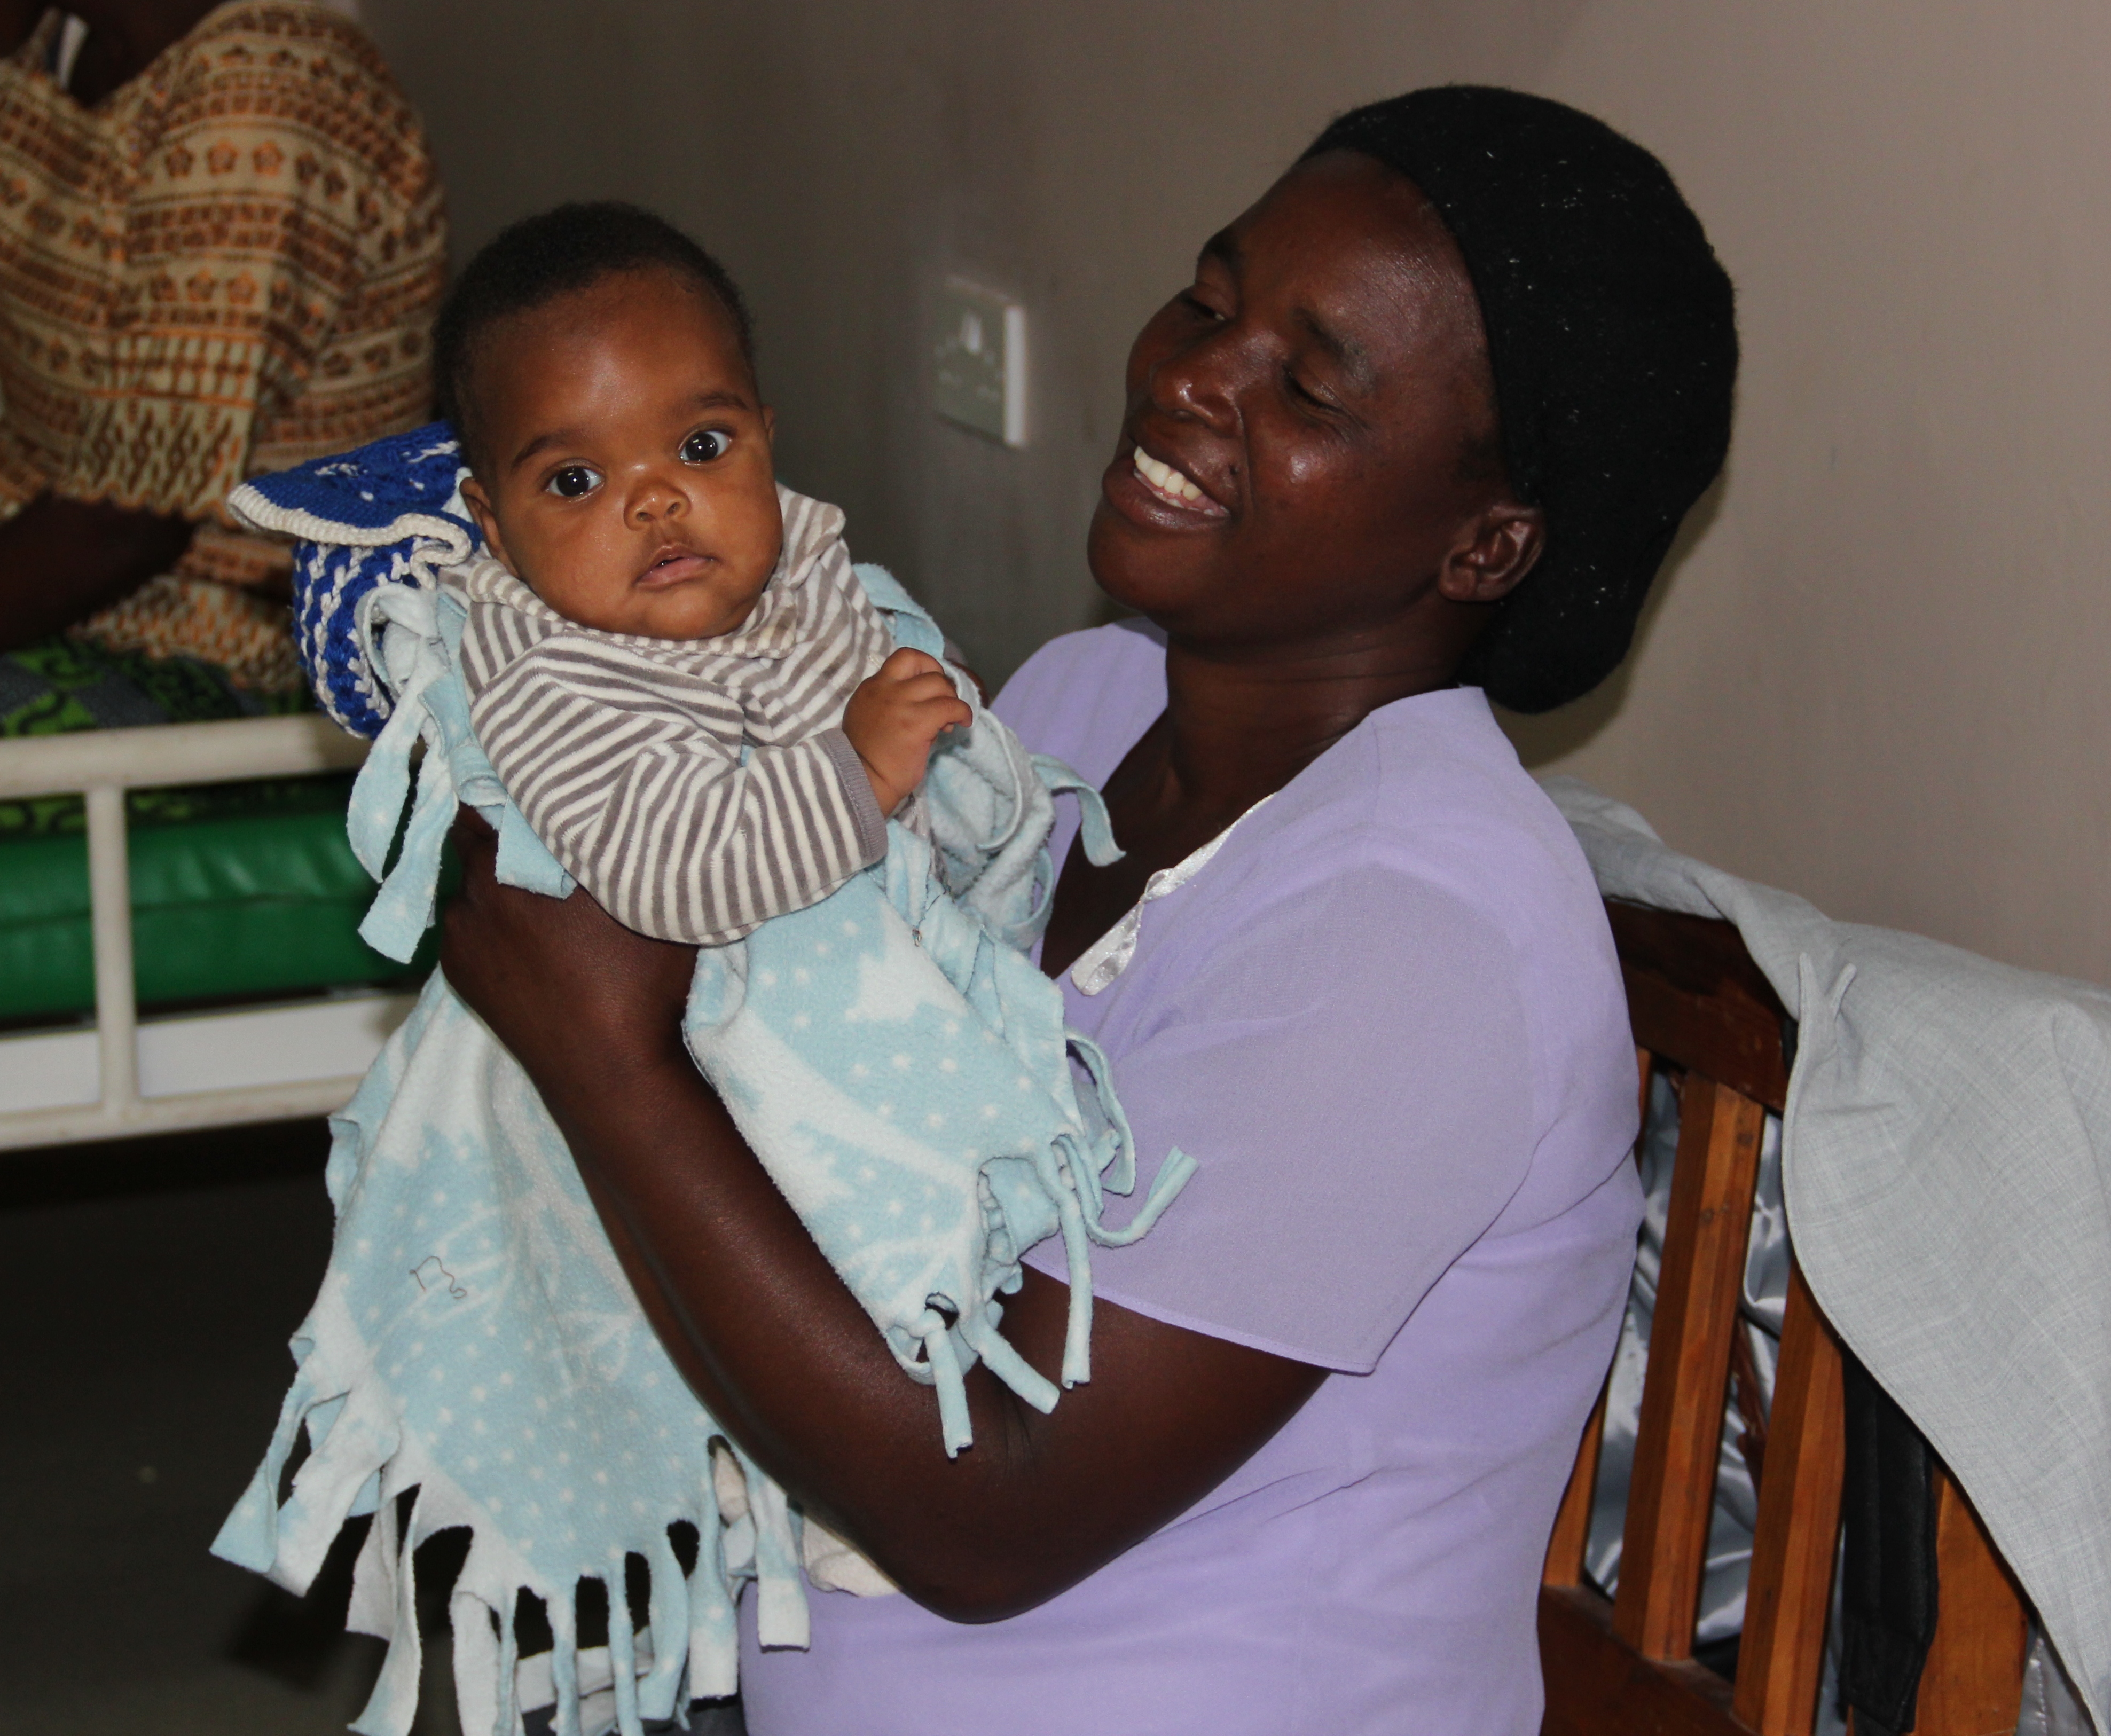 Bwaila Hospital, Lilongwe, Malawi (Photo by Holly Connor/EngenderHealth